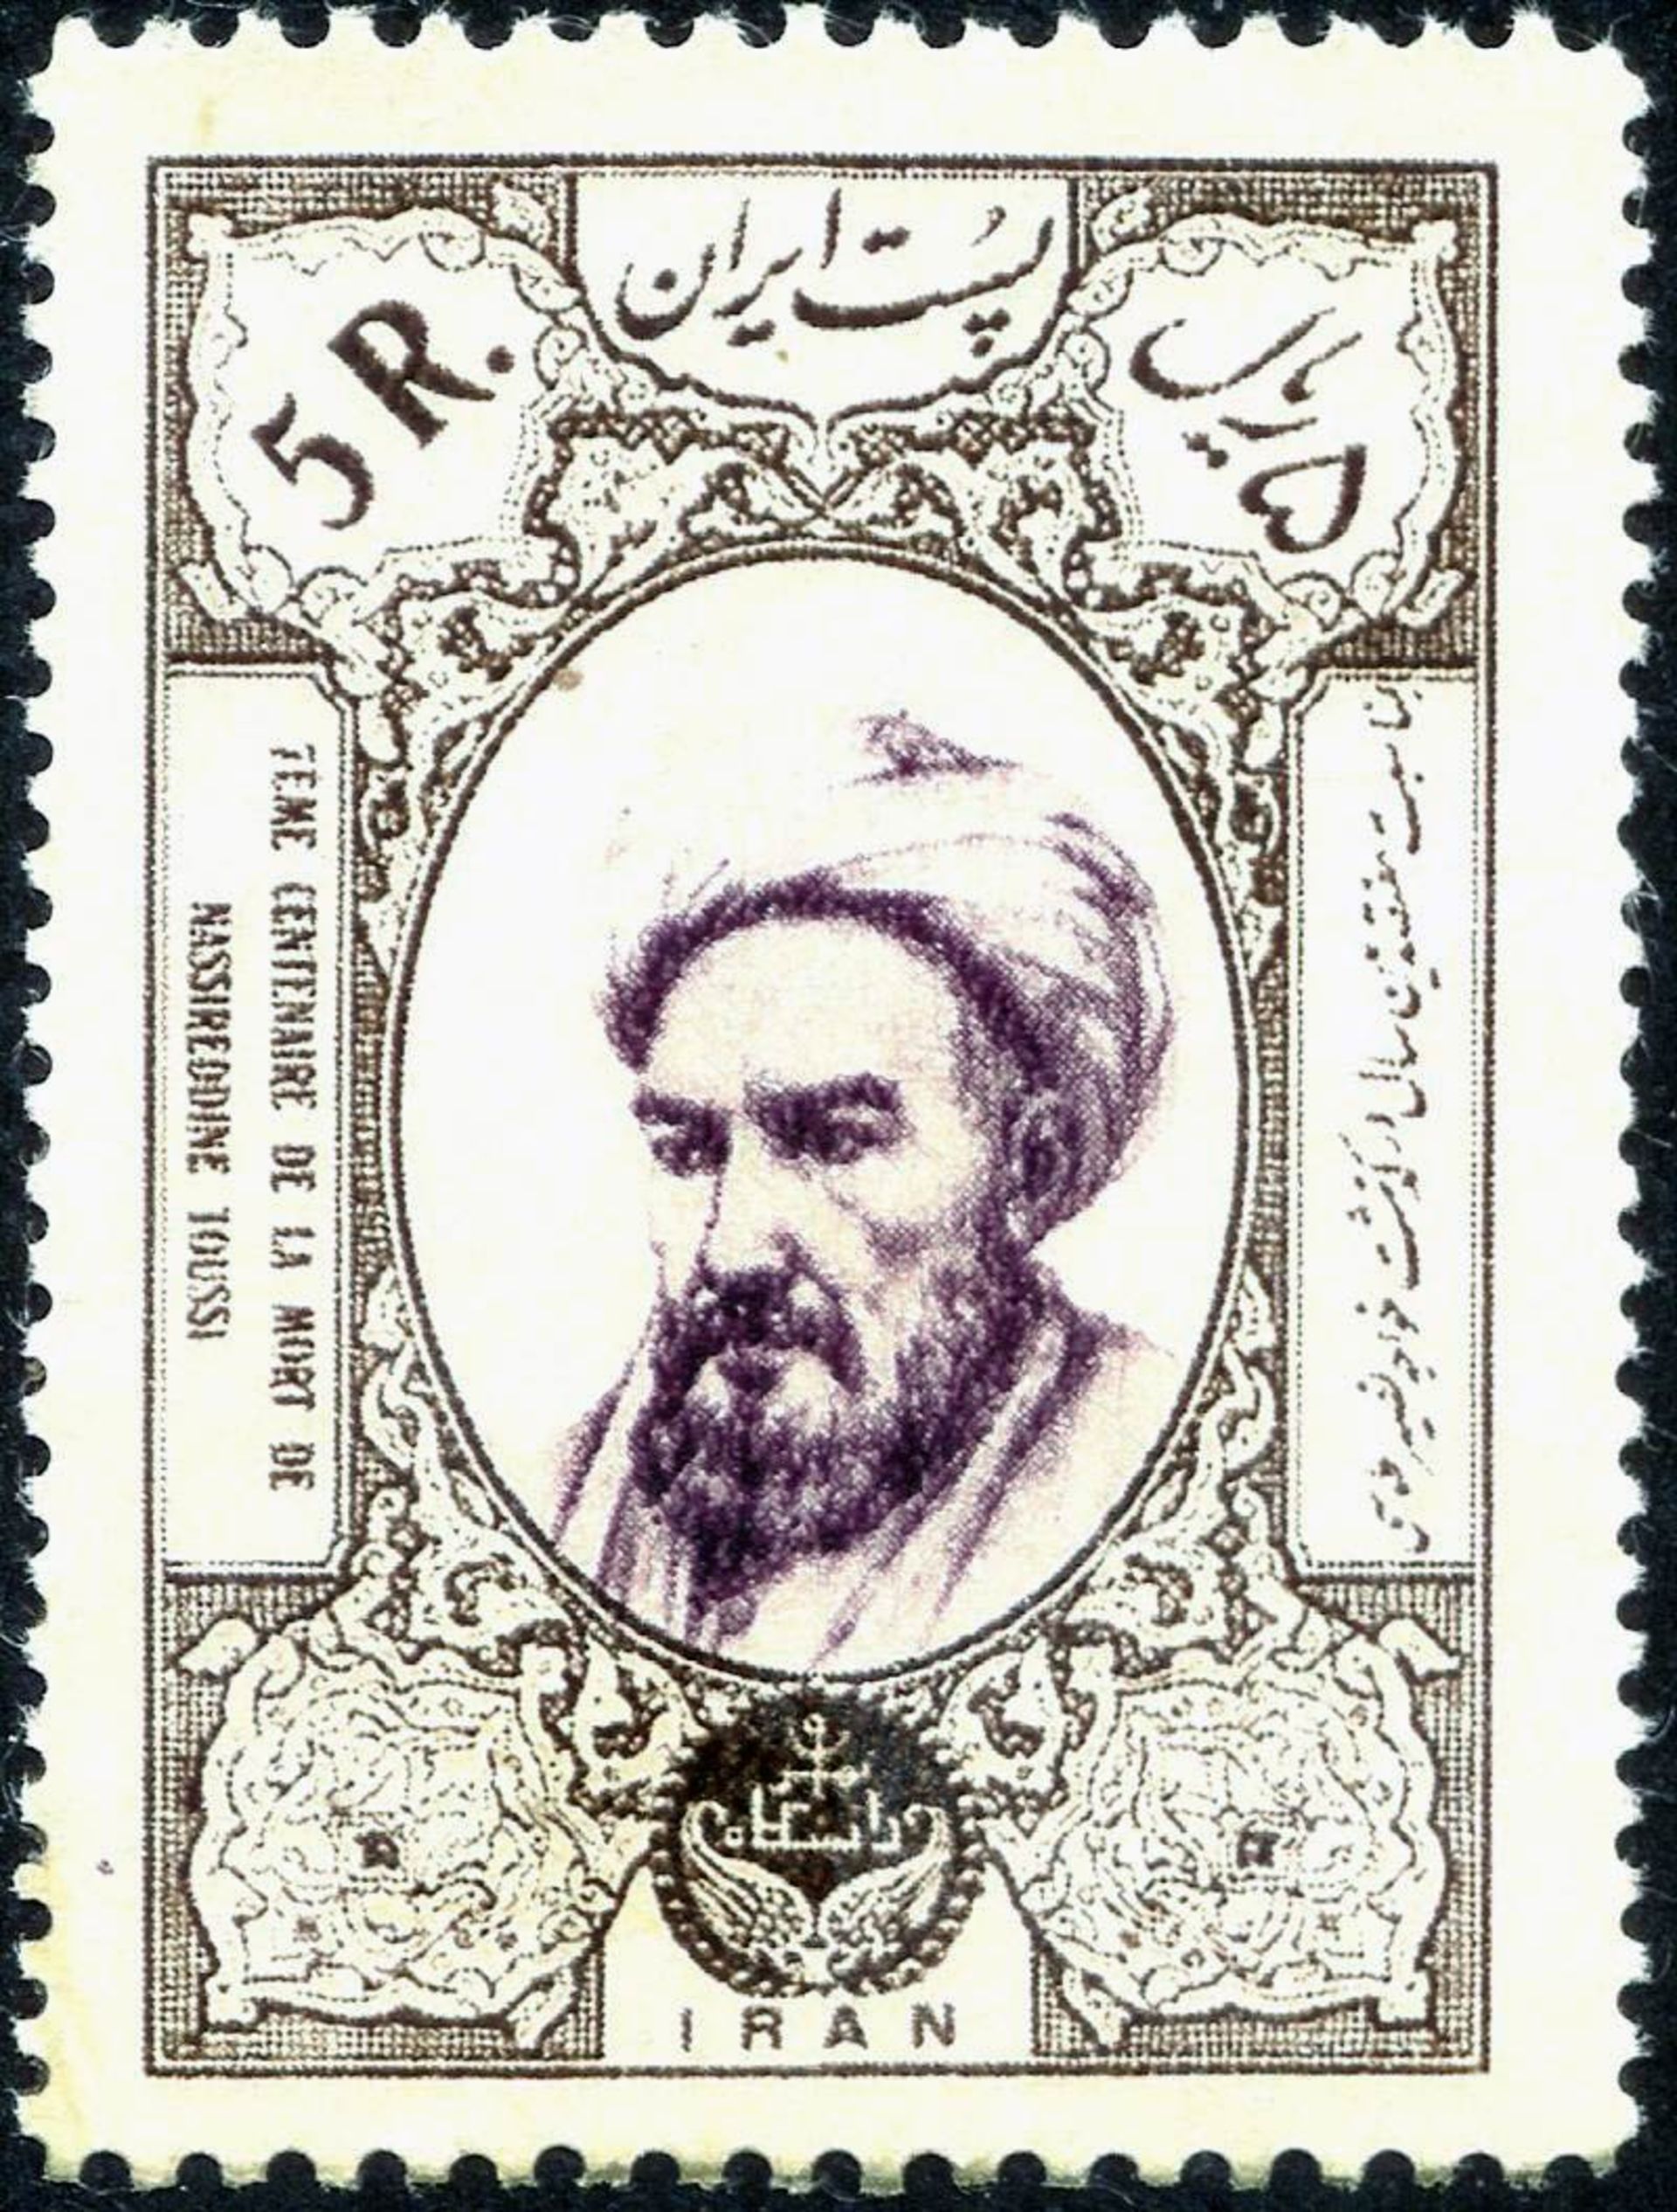 تصویر خواجه نصیرالدین طوسی روی تمبر پستی ایرانی به مناسبت هفتصدمین سالروز تولد او